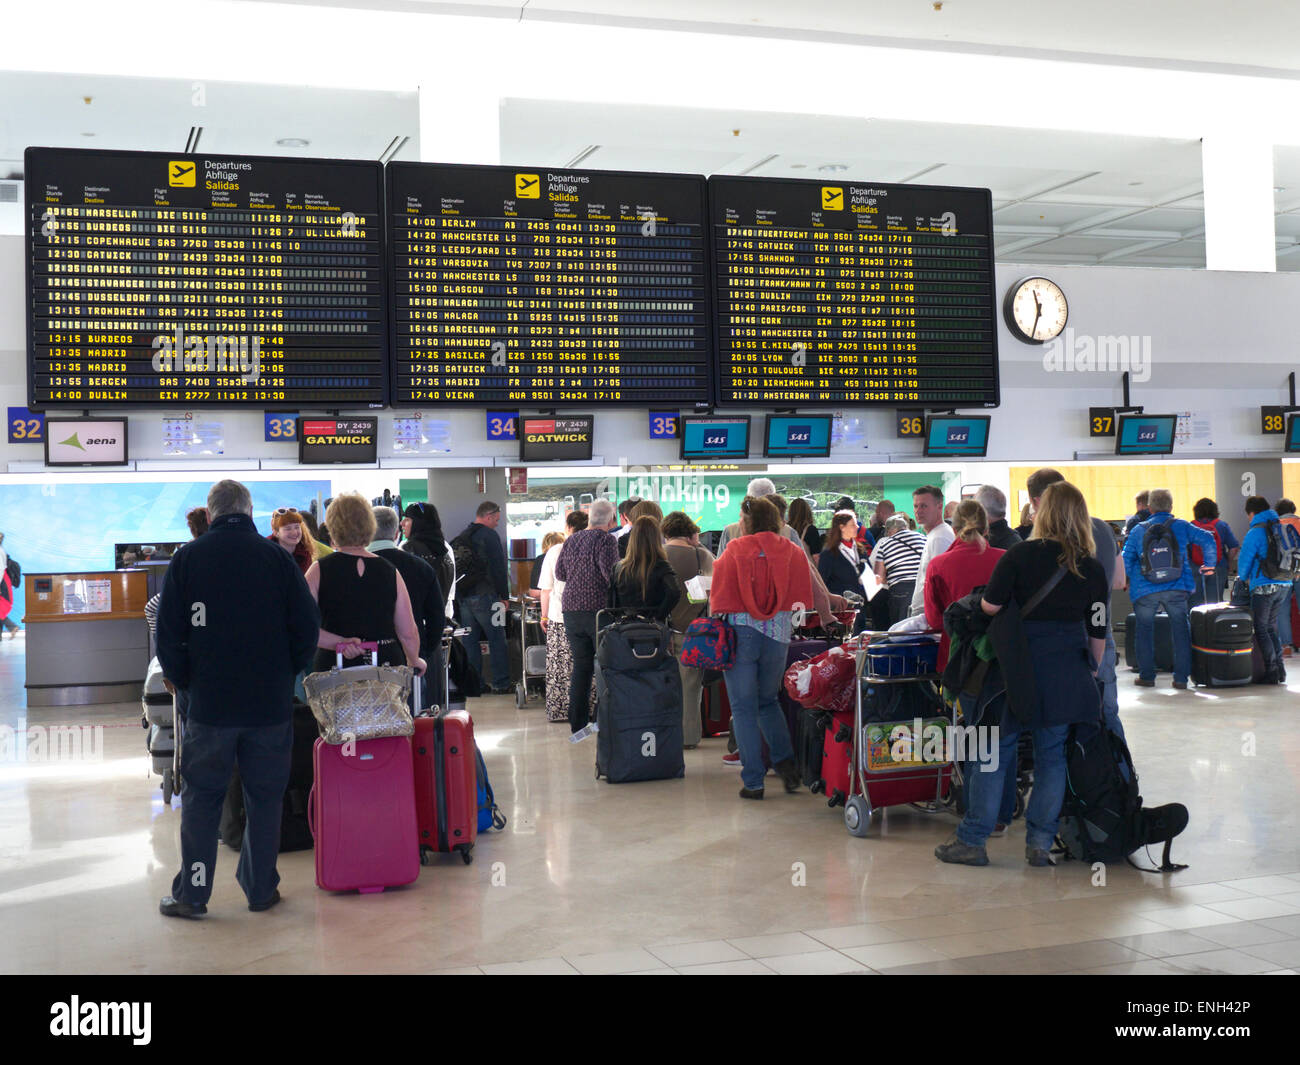 Aéroports Espagne les écrans d'information et les files d'attente des passagers et des bagages des compagnies aériennes attendent sur le hall de l'aéroport pour s'enregistrer sur leur vol Banque D'Images